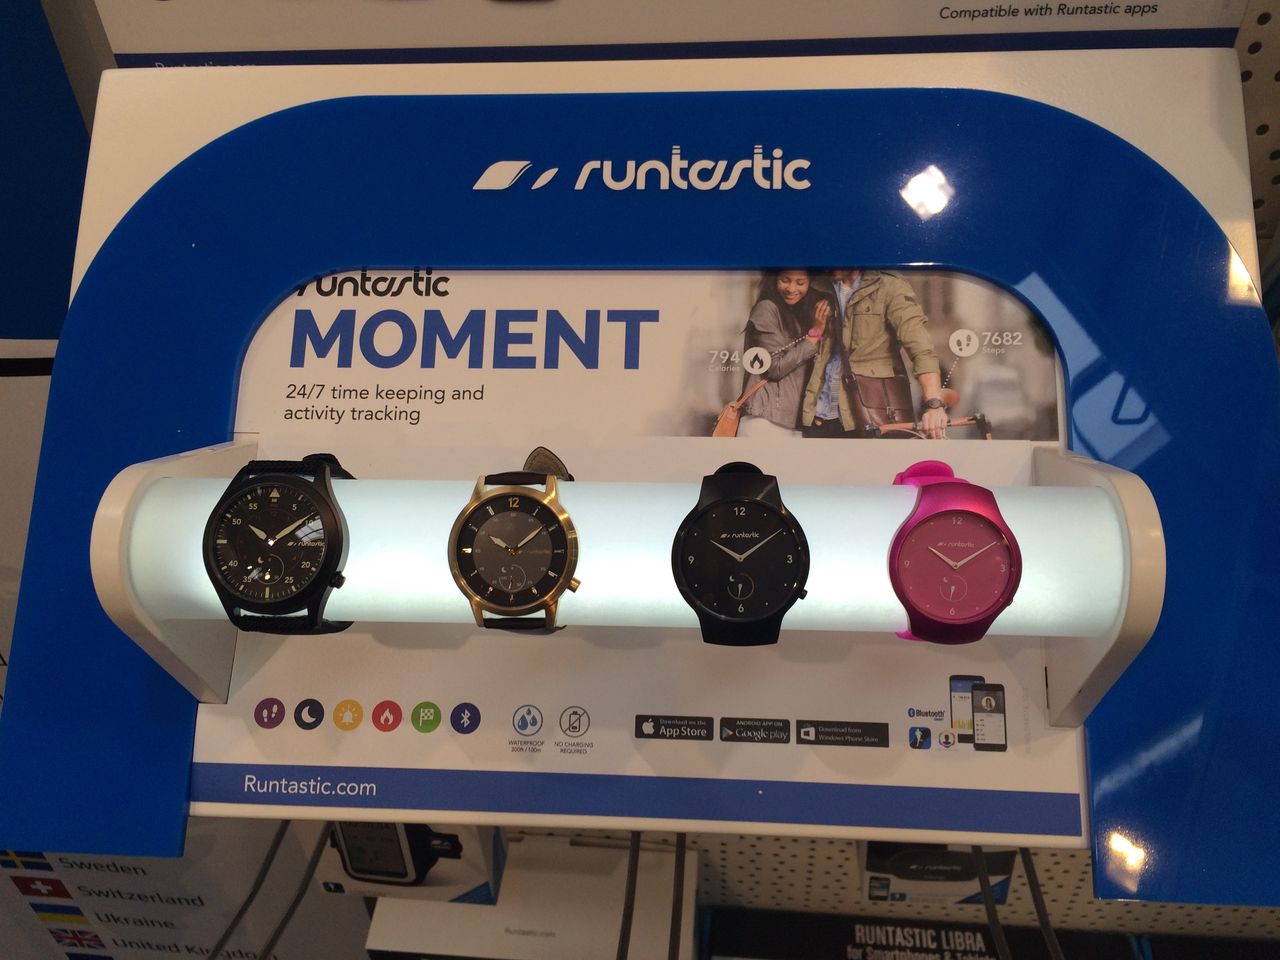 Oferta zegarków Runstatic powinna zadowolić każdego.  Runstastic oferuje tu aż 10 wzorów zegarków.